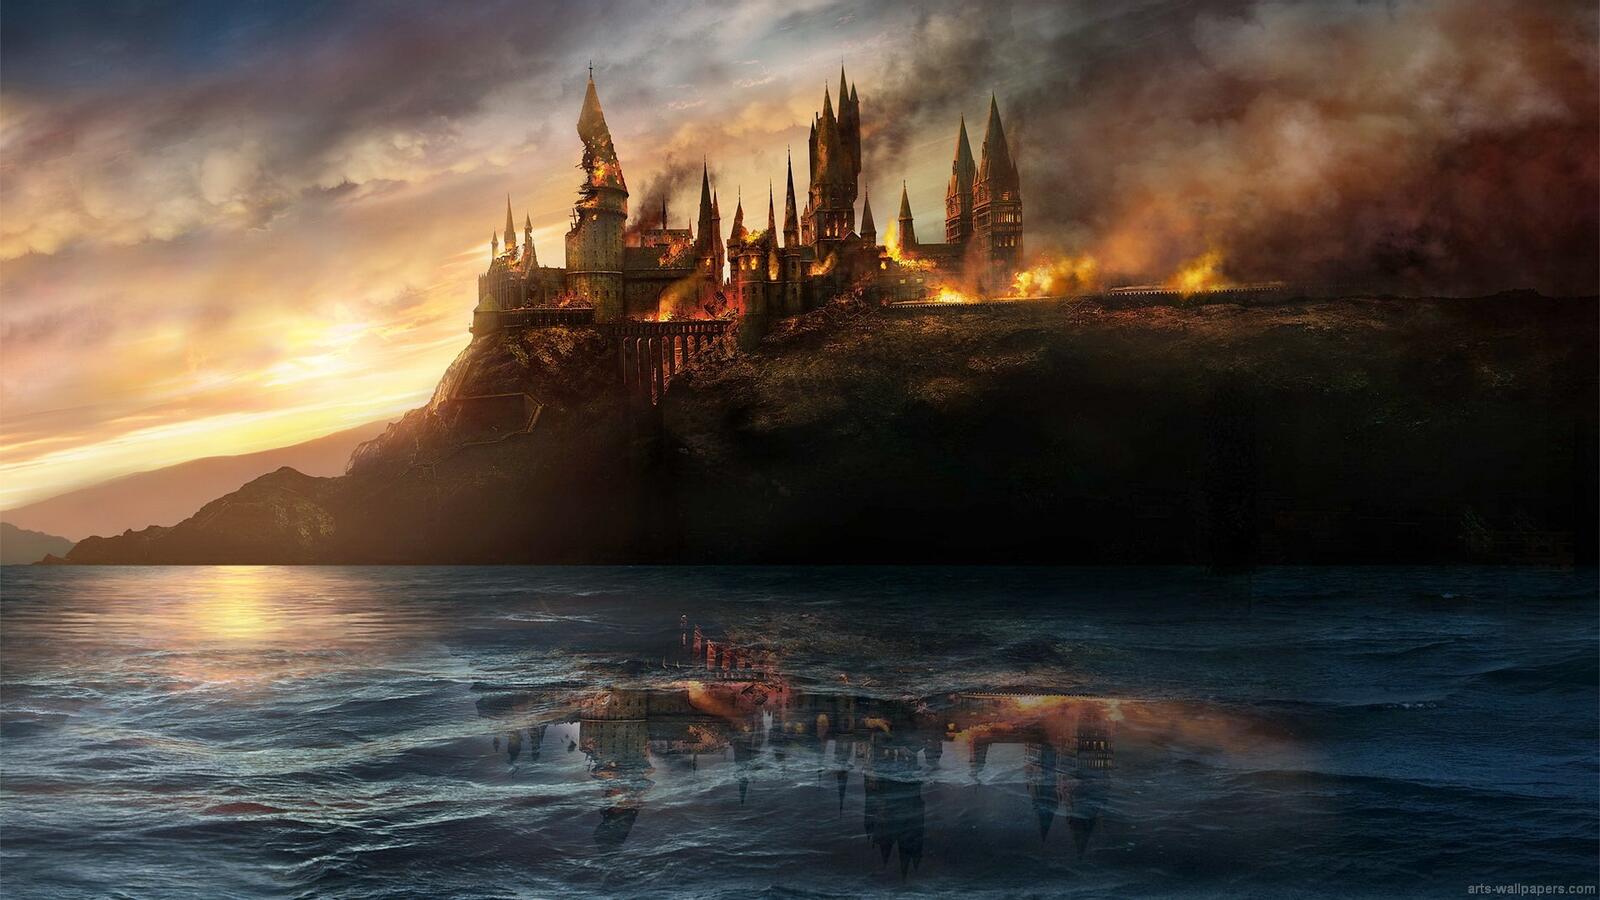 Wallpapers Harry Potter Hogwarts battle of Hogwarts on the desktop